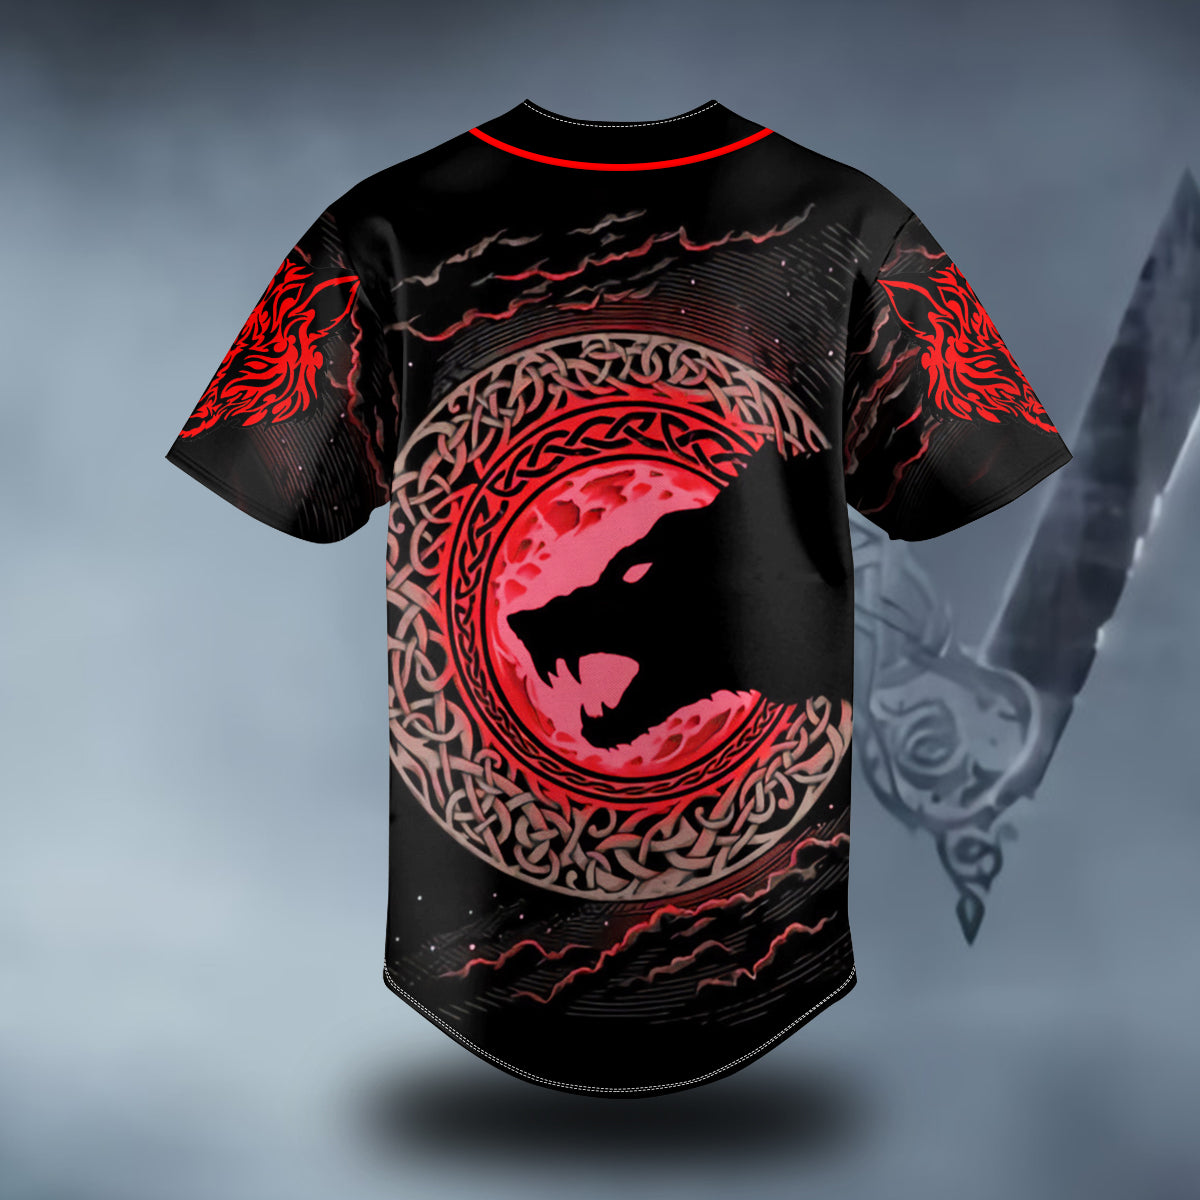 red moon wolf viking tattoo custom baseball jersey bsj 977 2vb4f